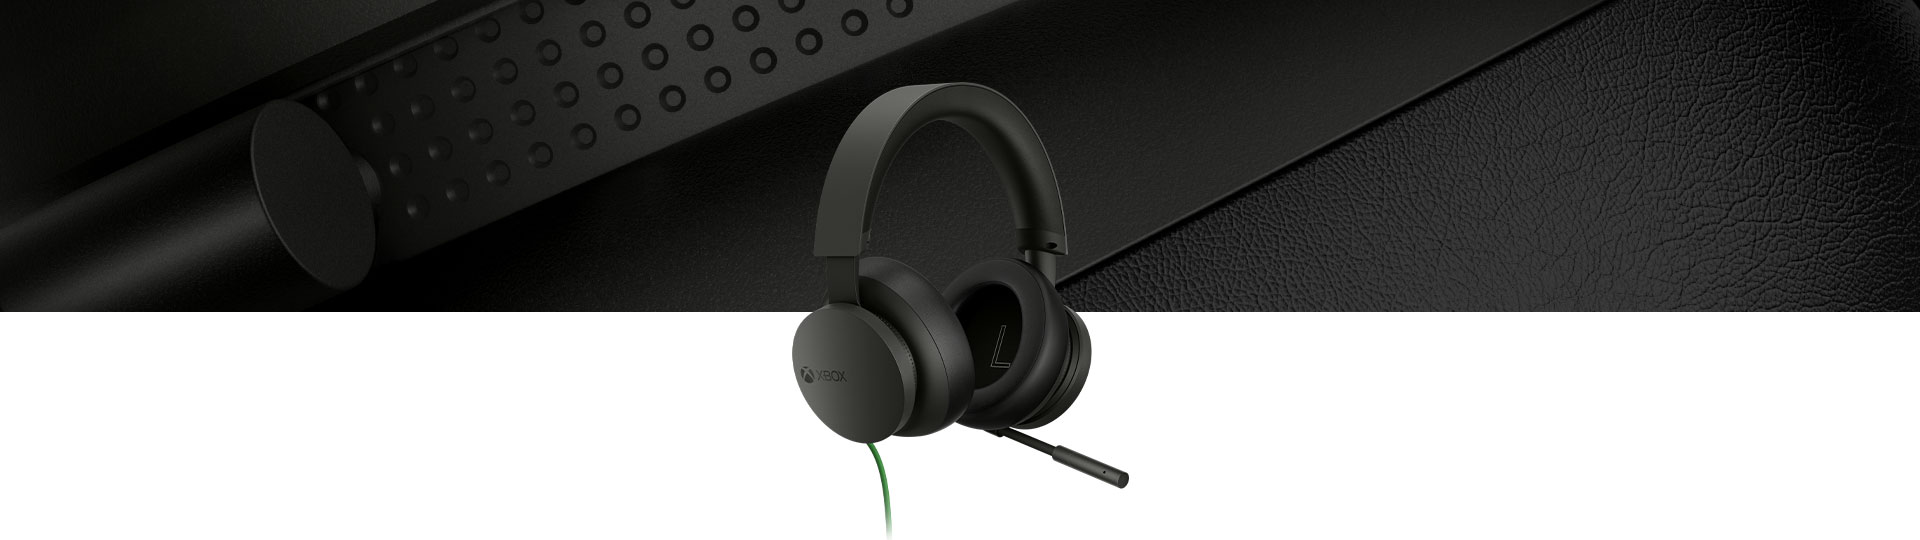 Xbox Stereo-Headset mit einer Nahaufnahme des Headsets im Hintergrund